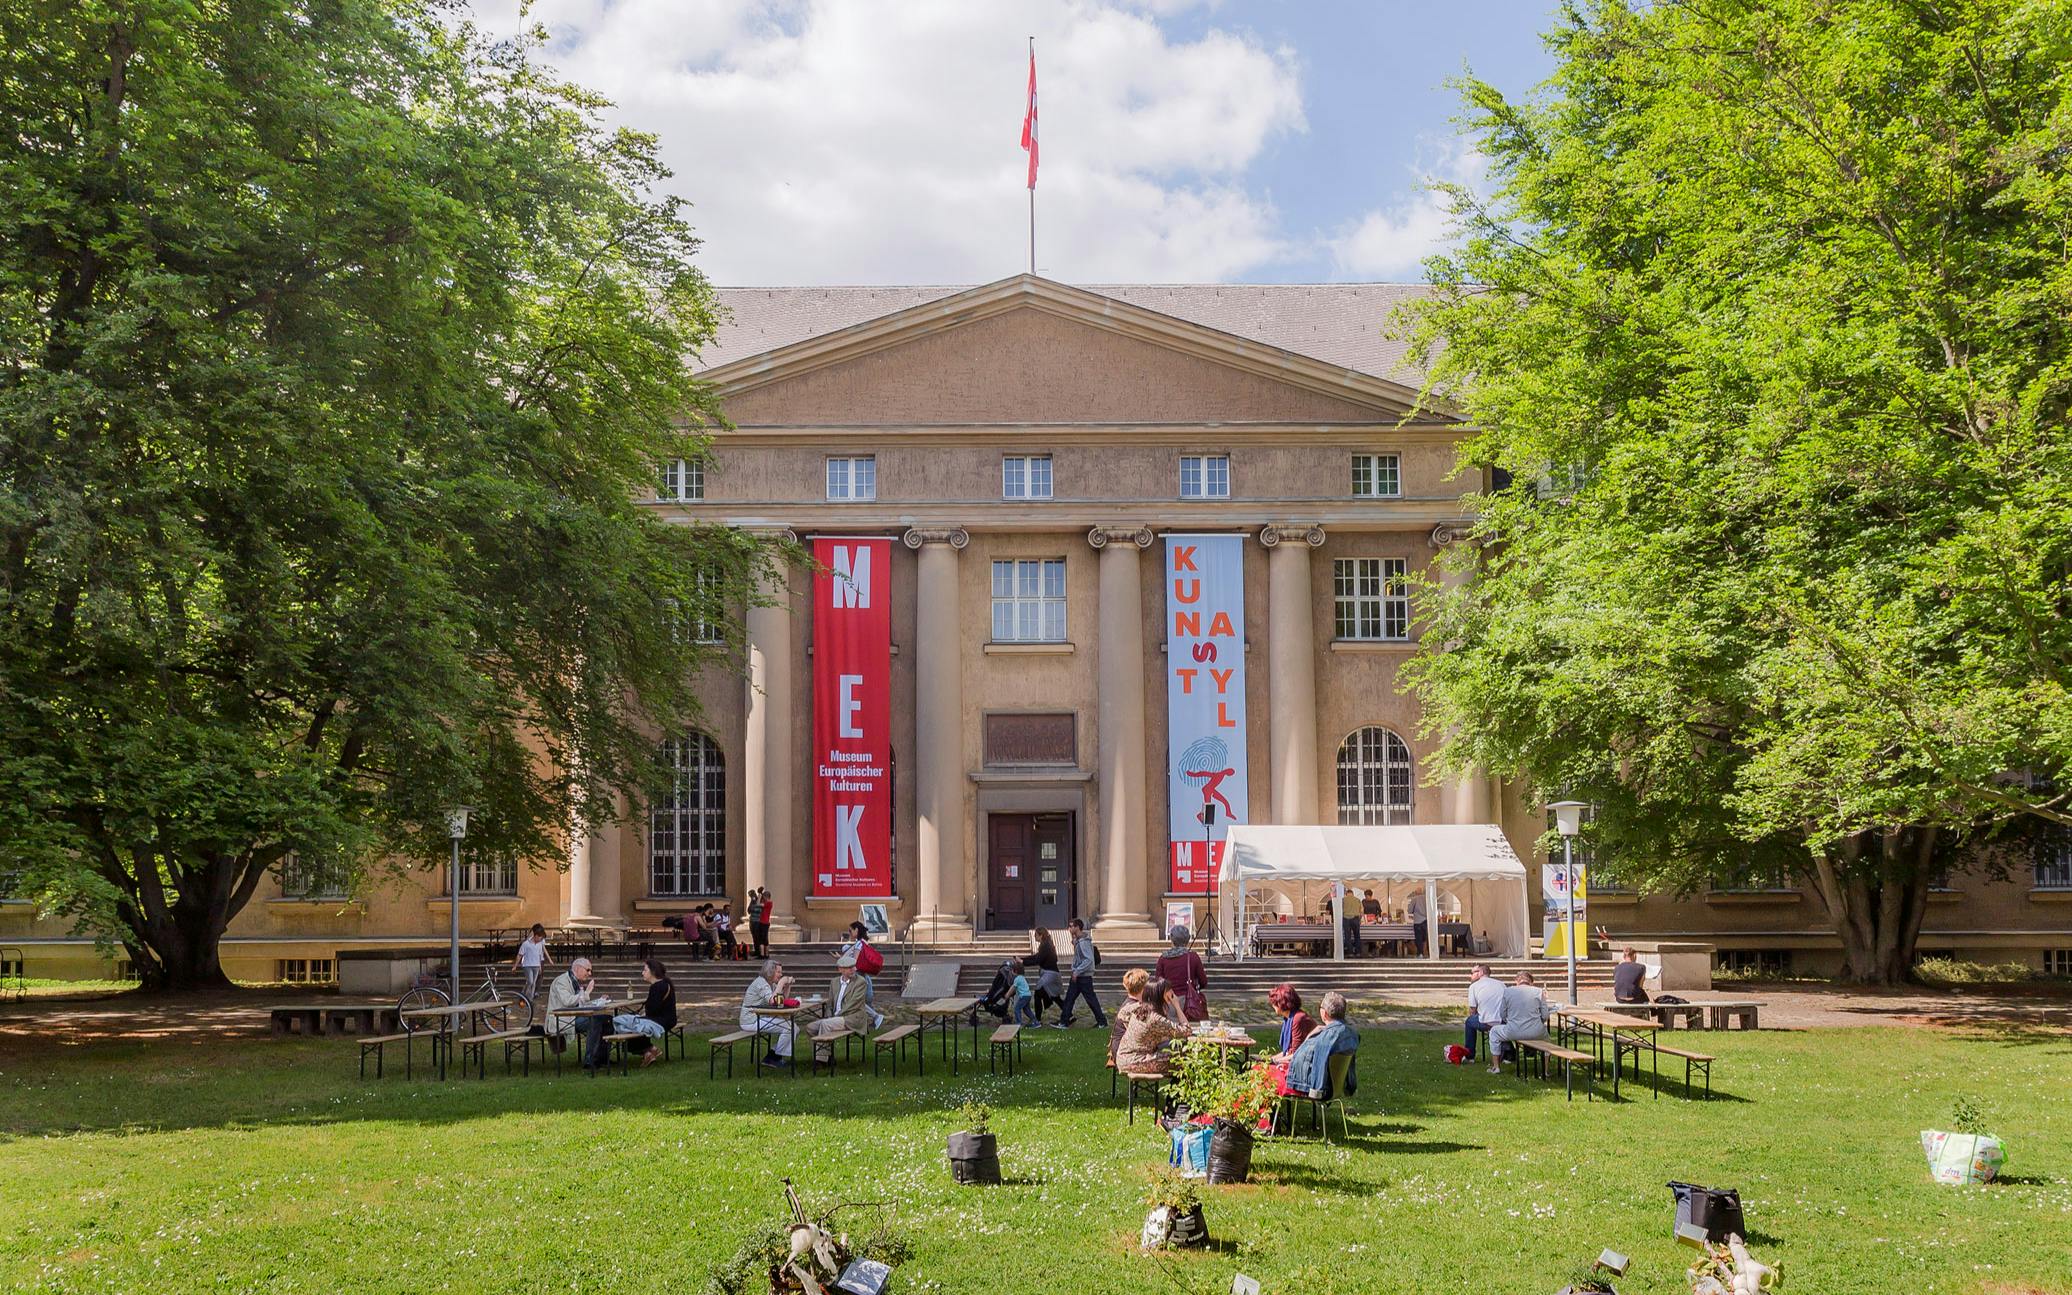 Ingressos sem fila para o Museu das Culturas Europeias em Berlim